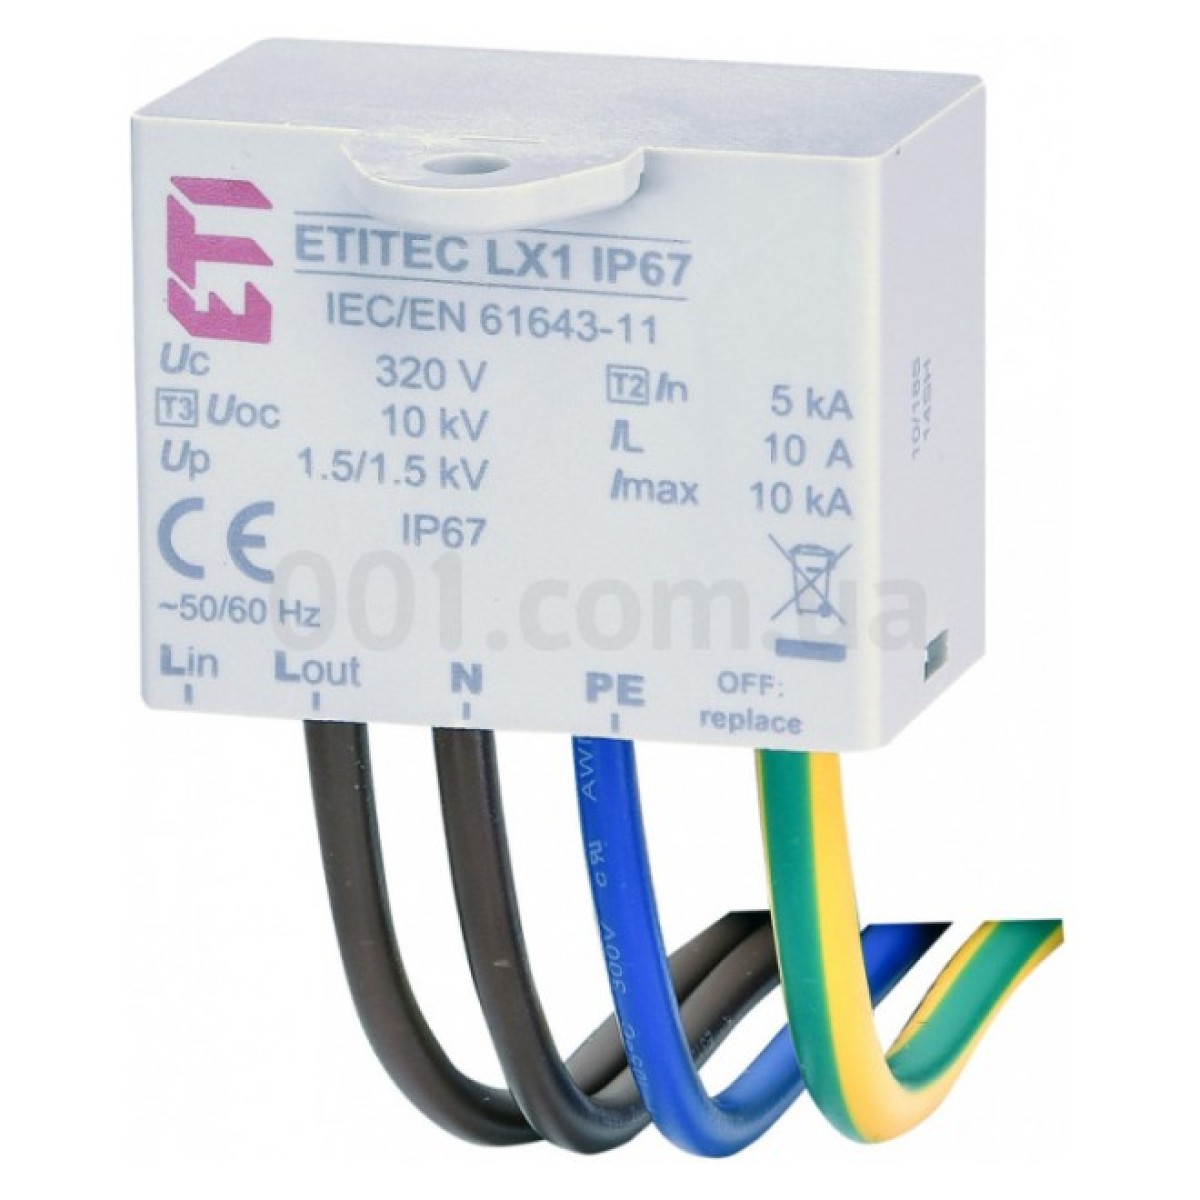 Обмежувач перенапруги ETITEC LX1 IP67, ETI 98_98.jpg